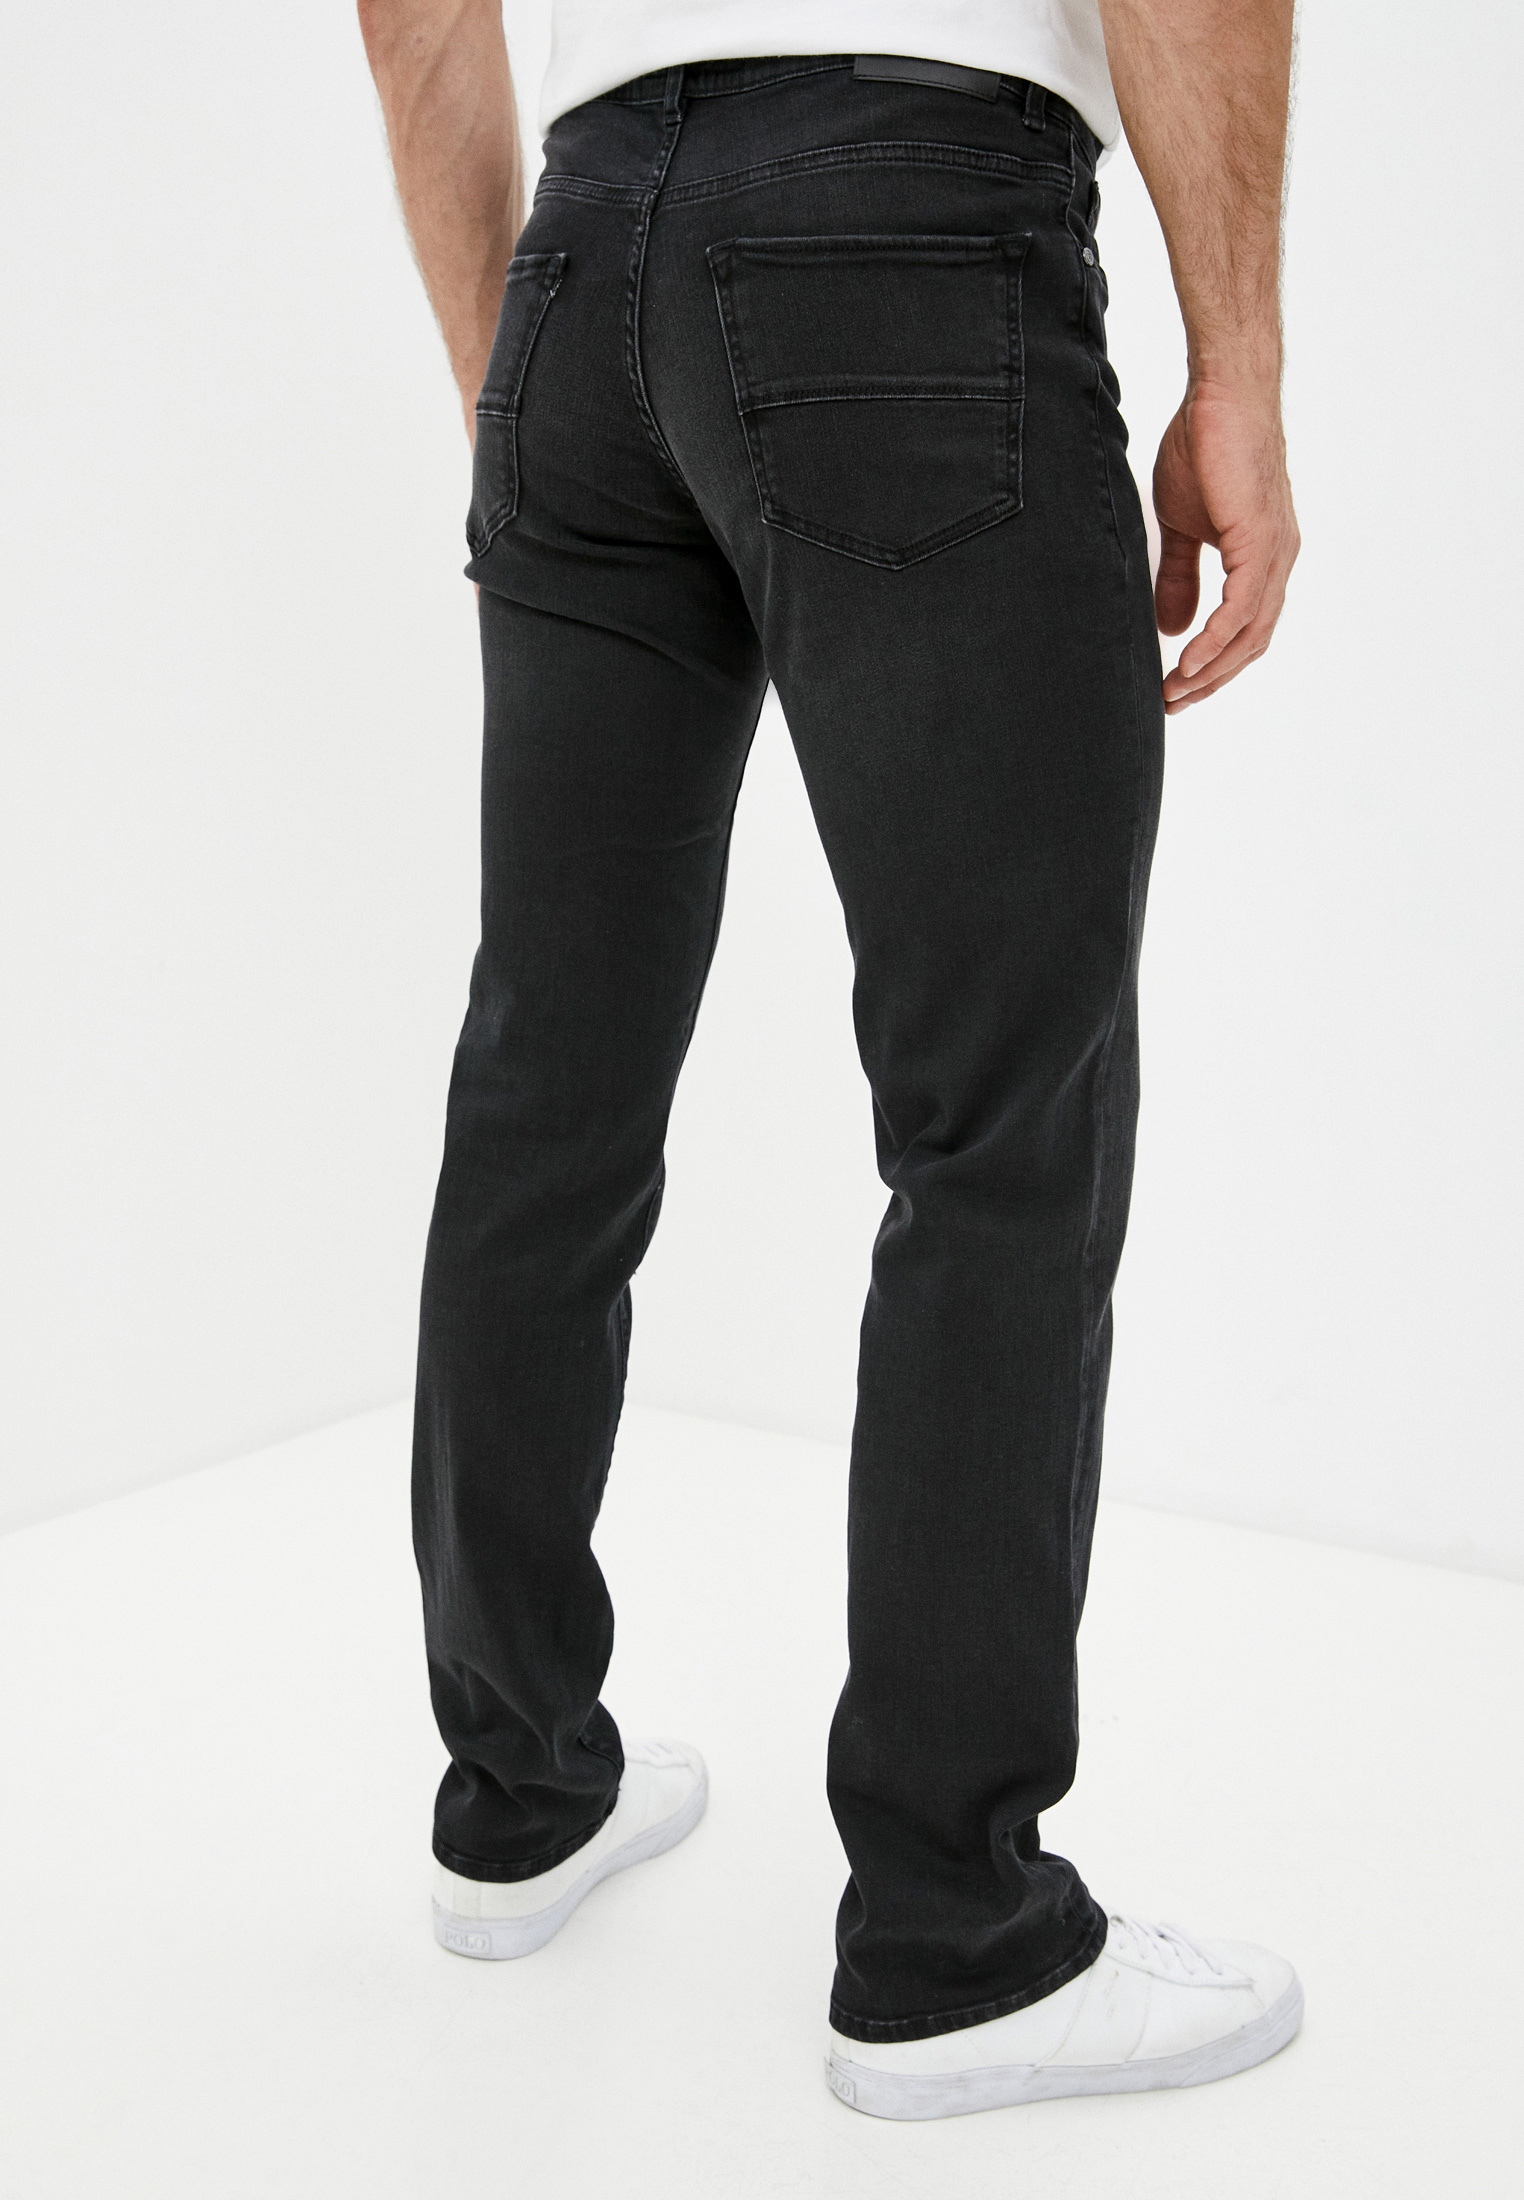 Мужские зауженные джинсы Trussardi (Труссарди) 52J00001-1T005110: изображение 4